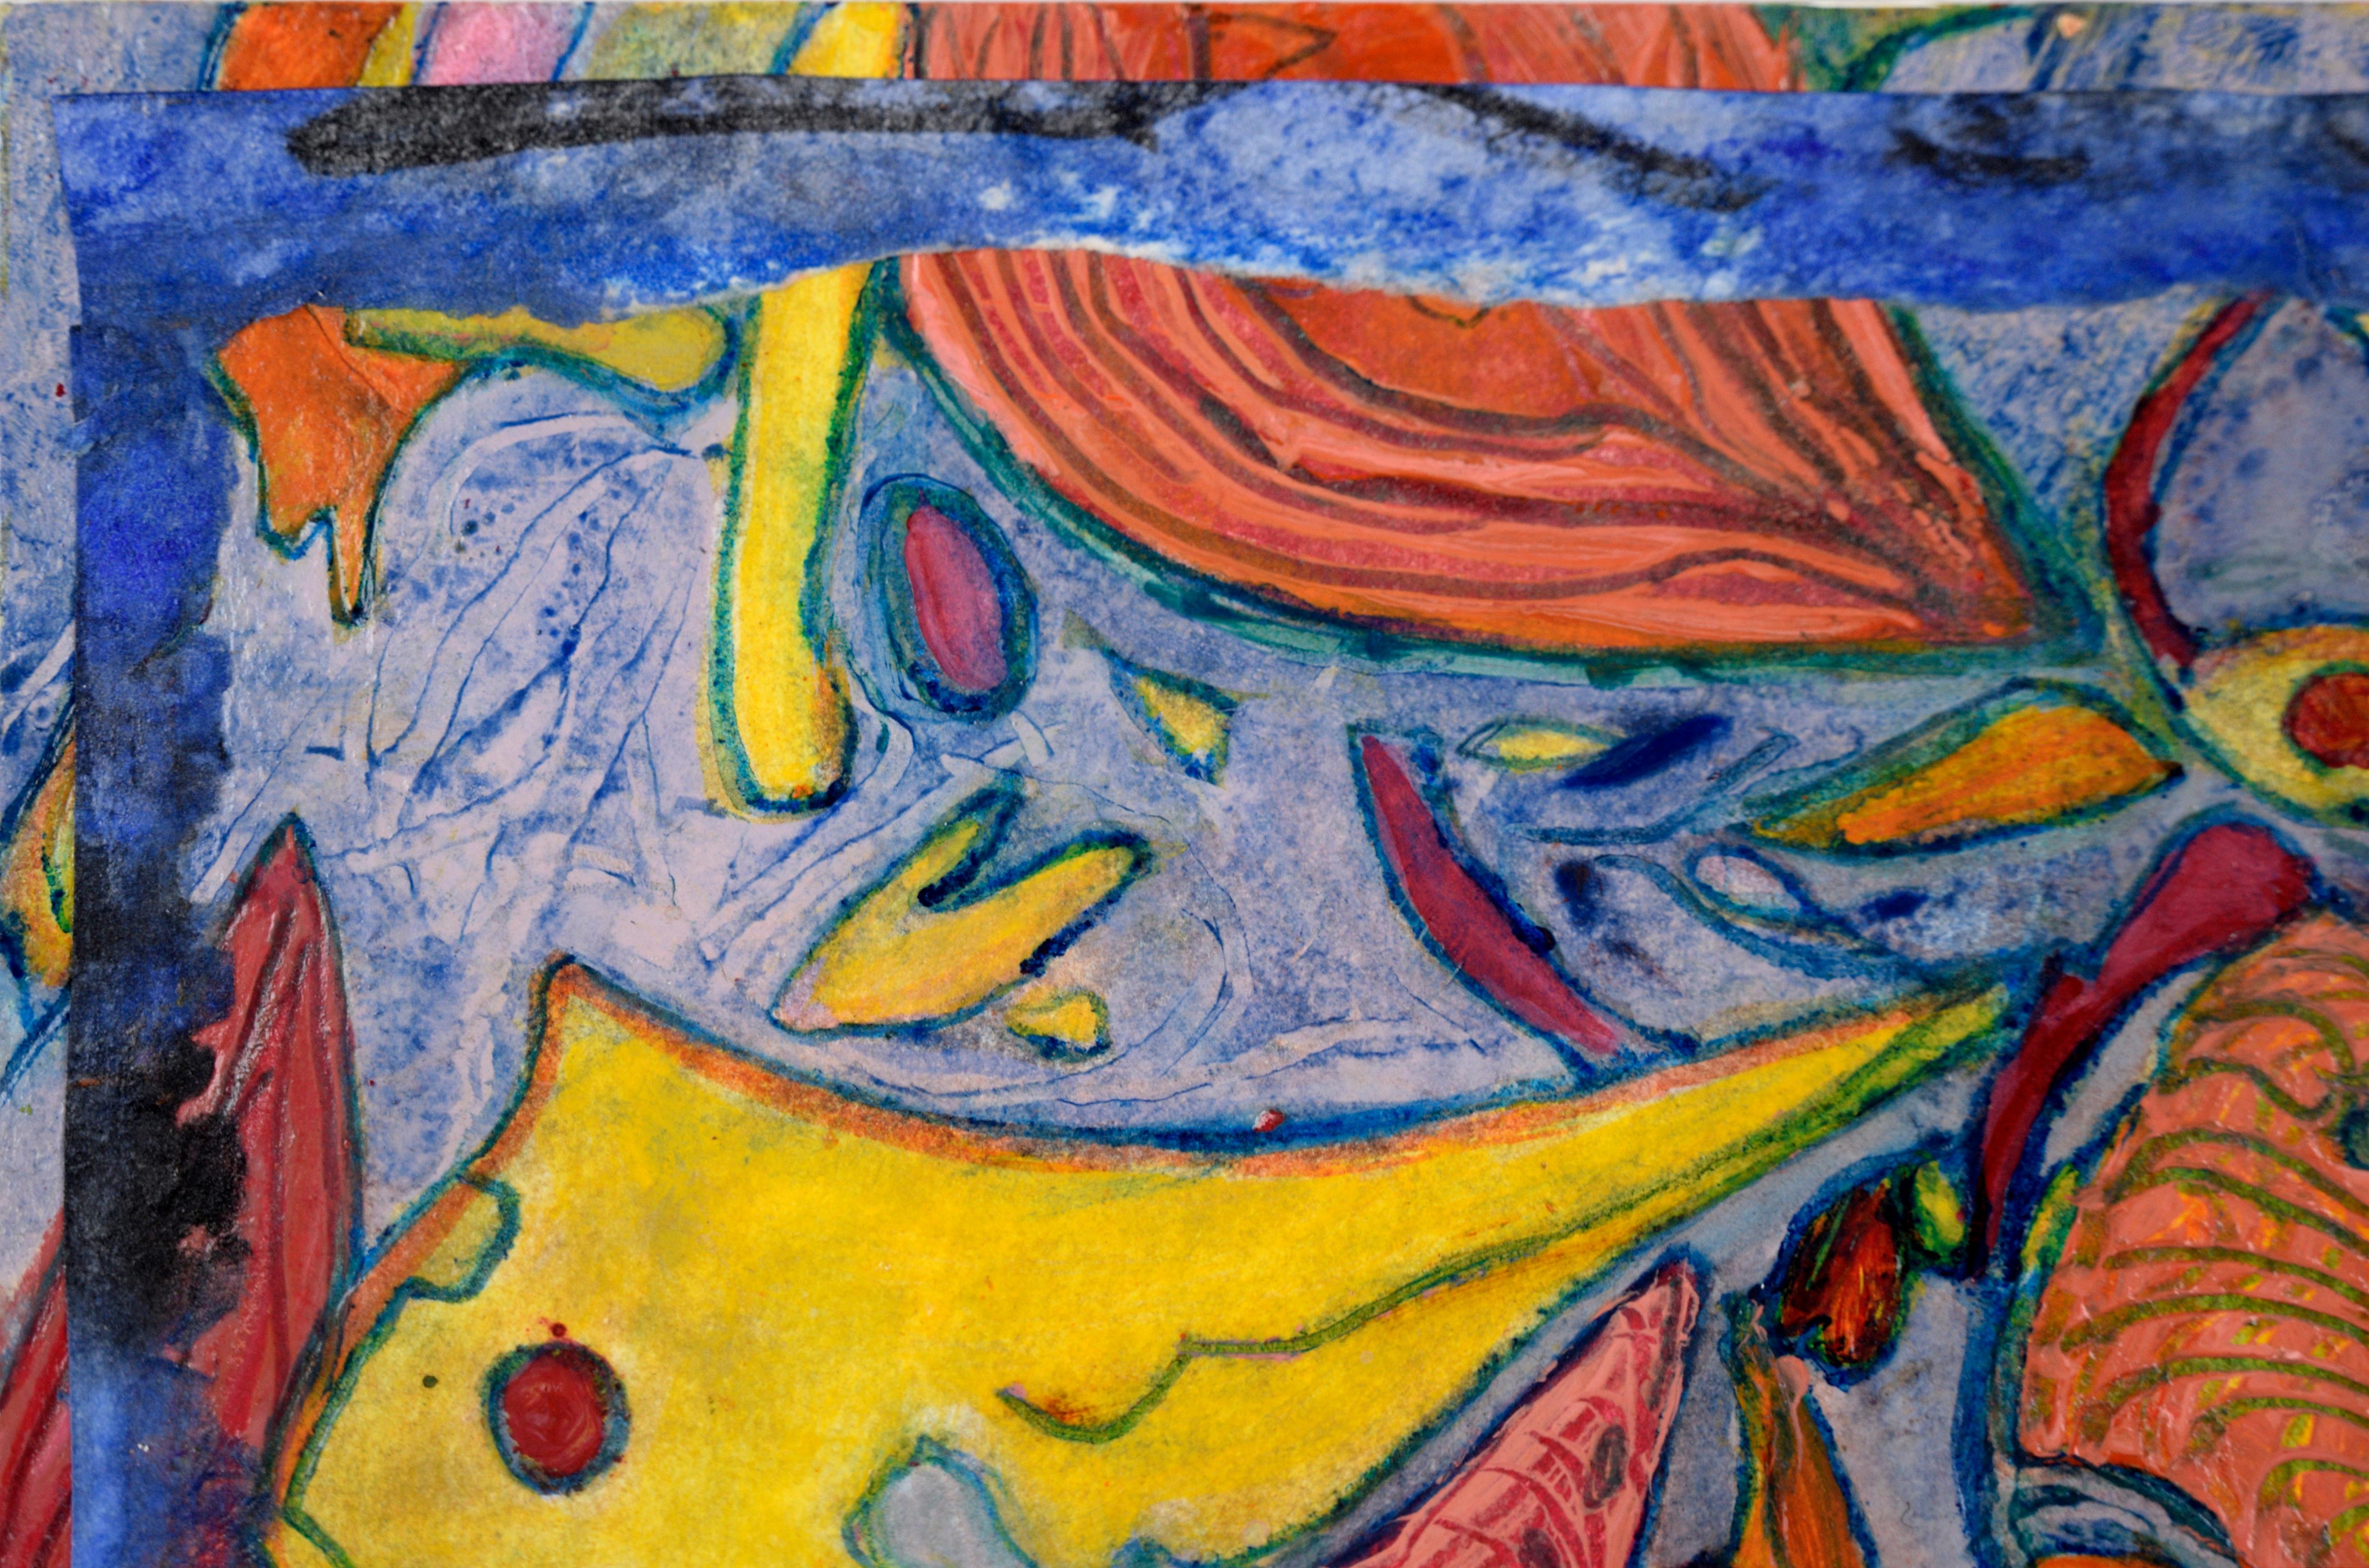 Carnaval abstrait en bleu, orange et jaune - Huile et Collage sur papier

Abstrait lumineux et coloré de Jennie AT&T (américaine, née en 1925). Les formes sont disséminées sur la page, ce qui implique le mouvement et l'évolution. À plusieurs